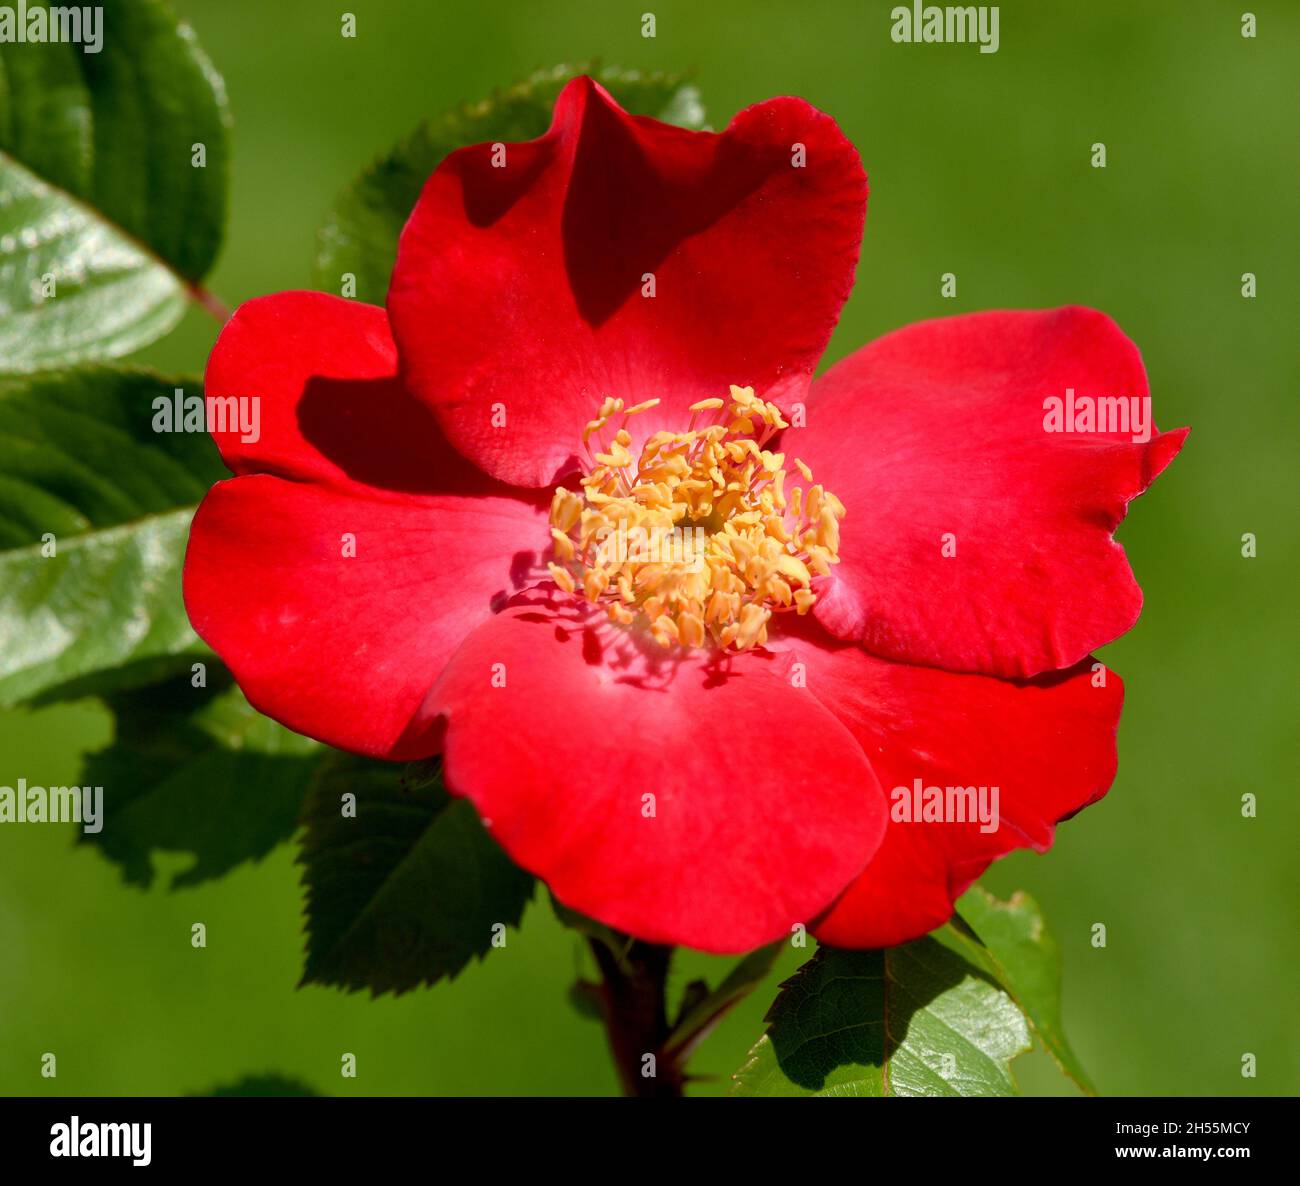 Roter Korsar ist eine Strauchrose mit roten Blueten. Roter Korsar is a  shrub rose with red flowers Stock Photo - Alamy